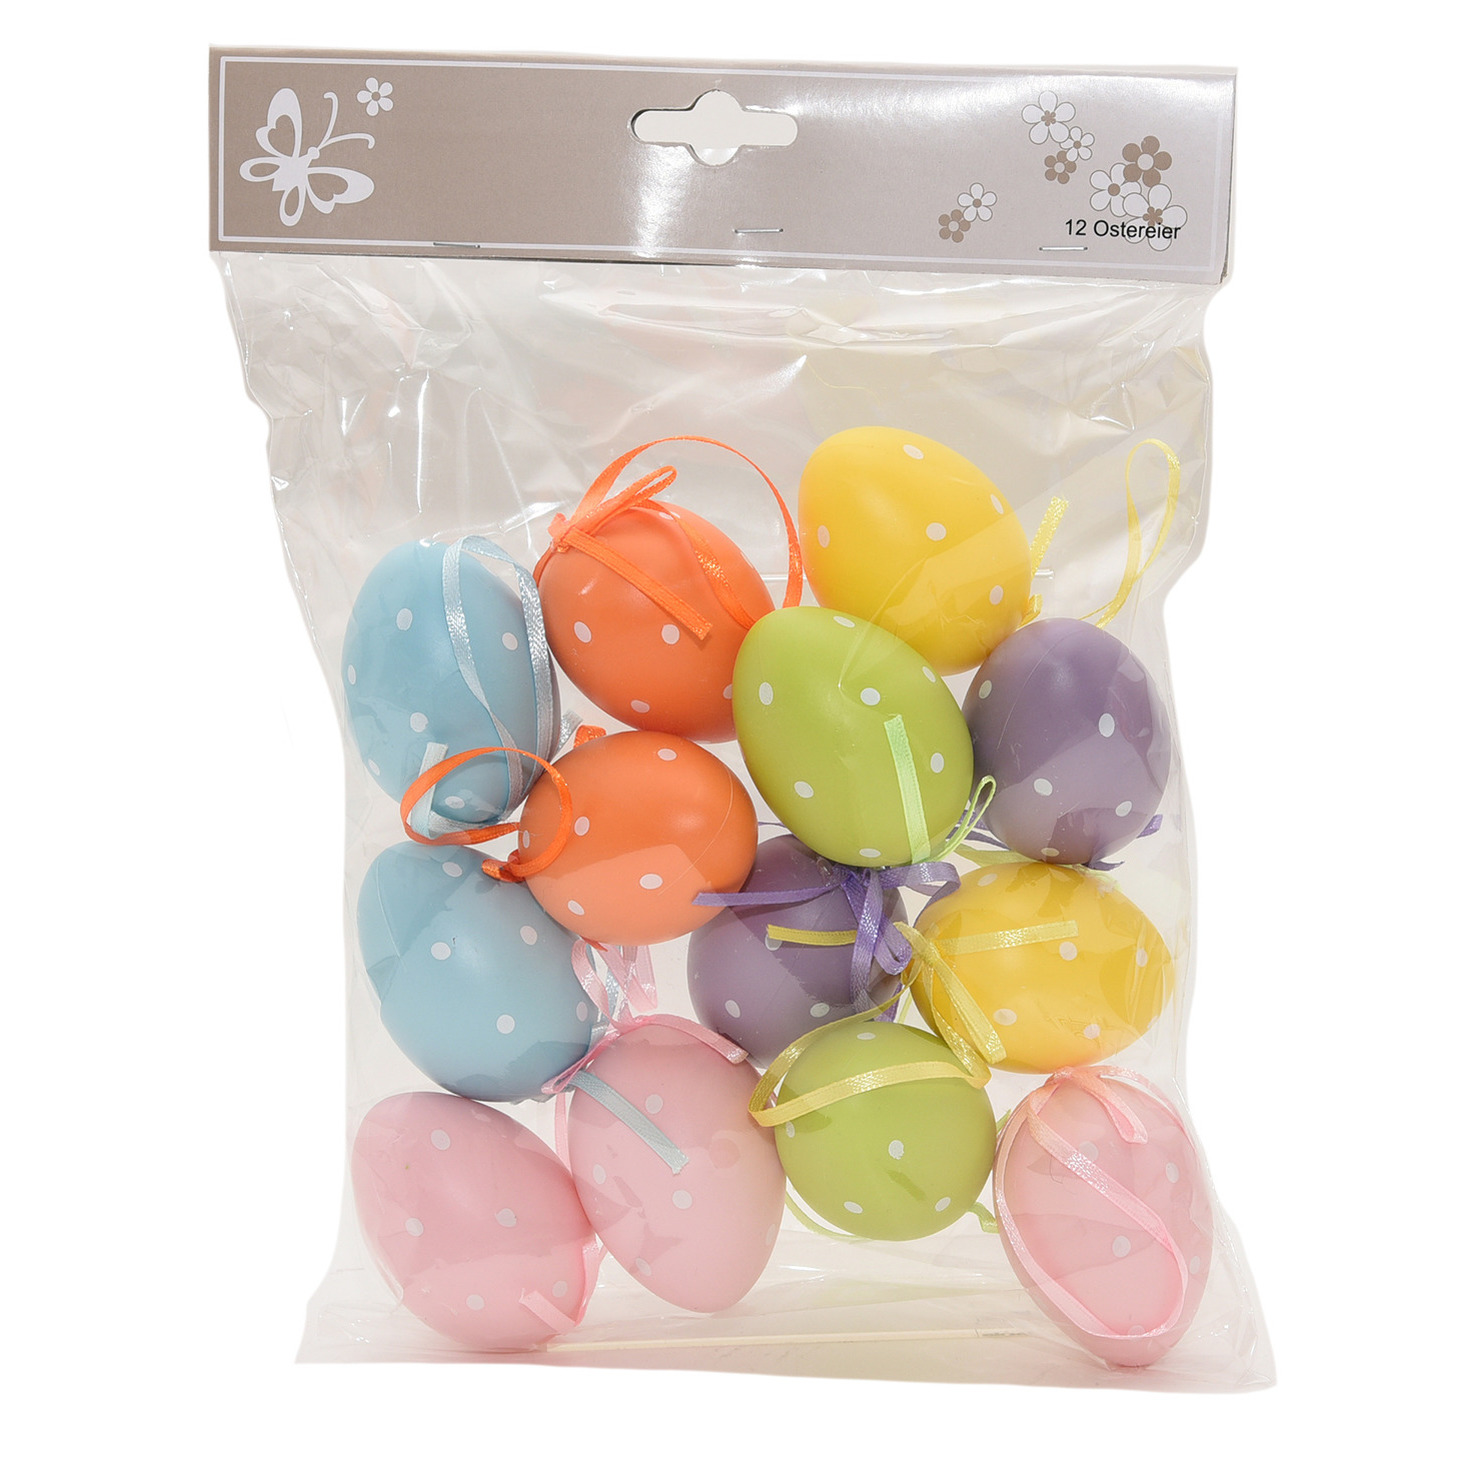 12x Gekleurde plastic/kunststof decoratie eieren/Paaseieren 6 cm